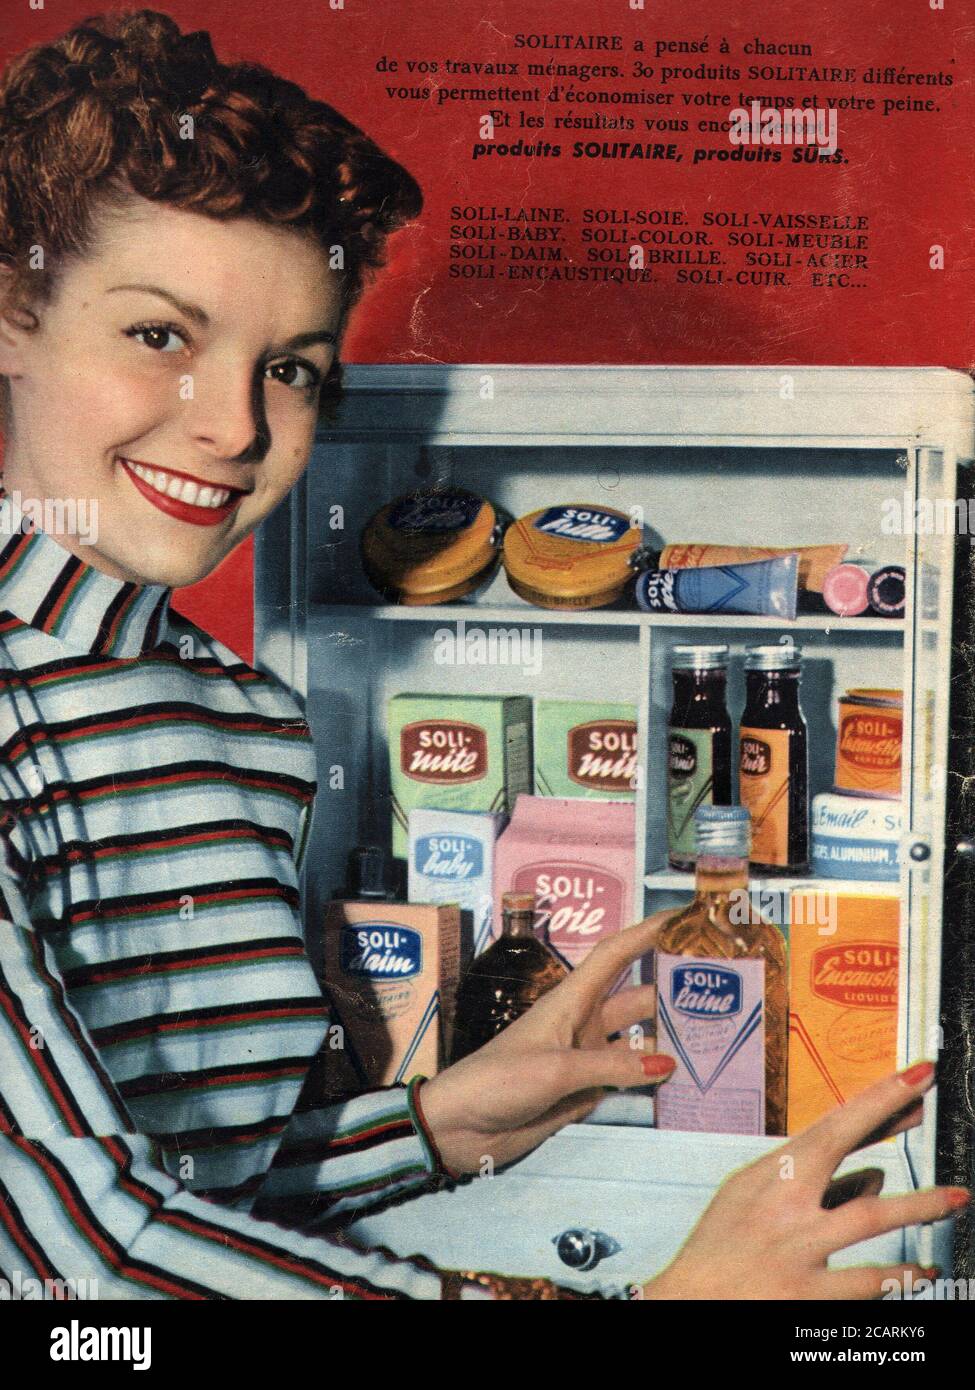 Publicite de presse produits Solitaire vers 1950 Stock Photo - Alamy